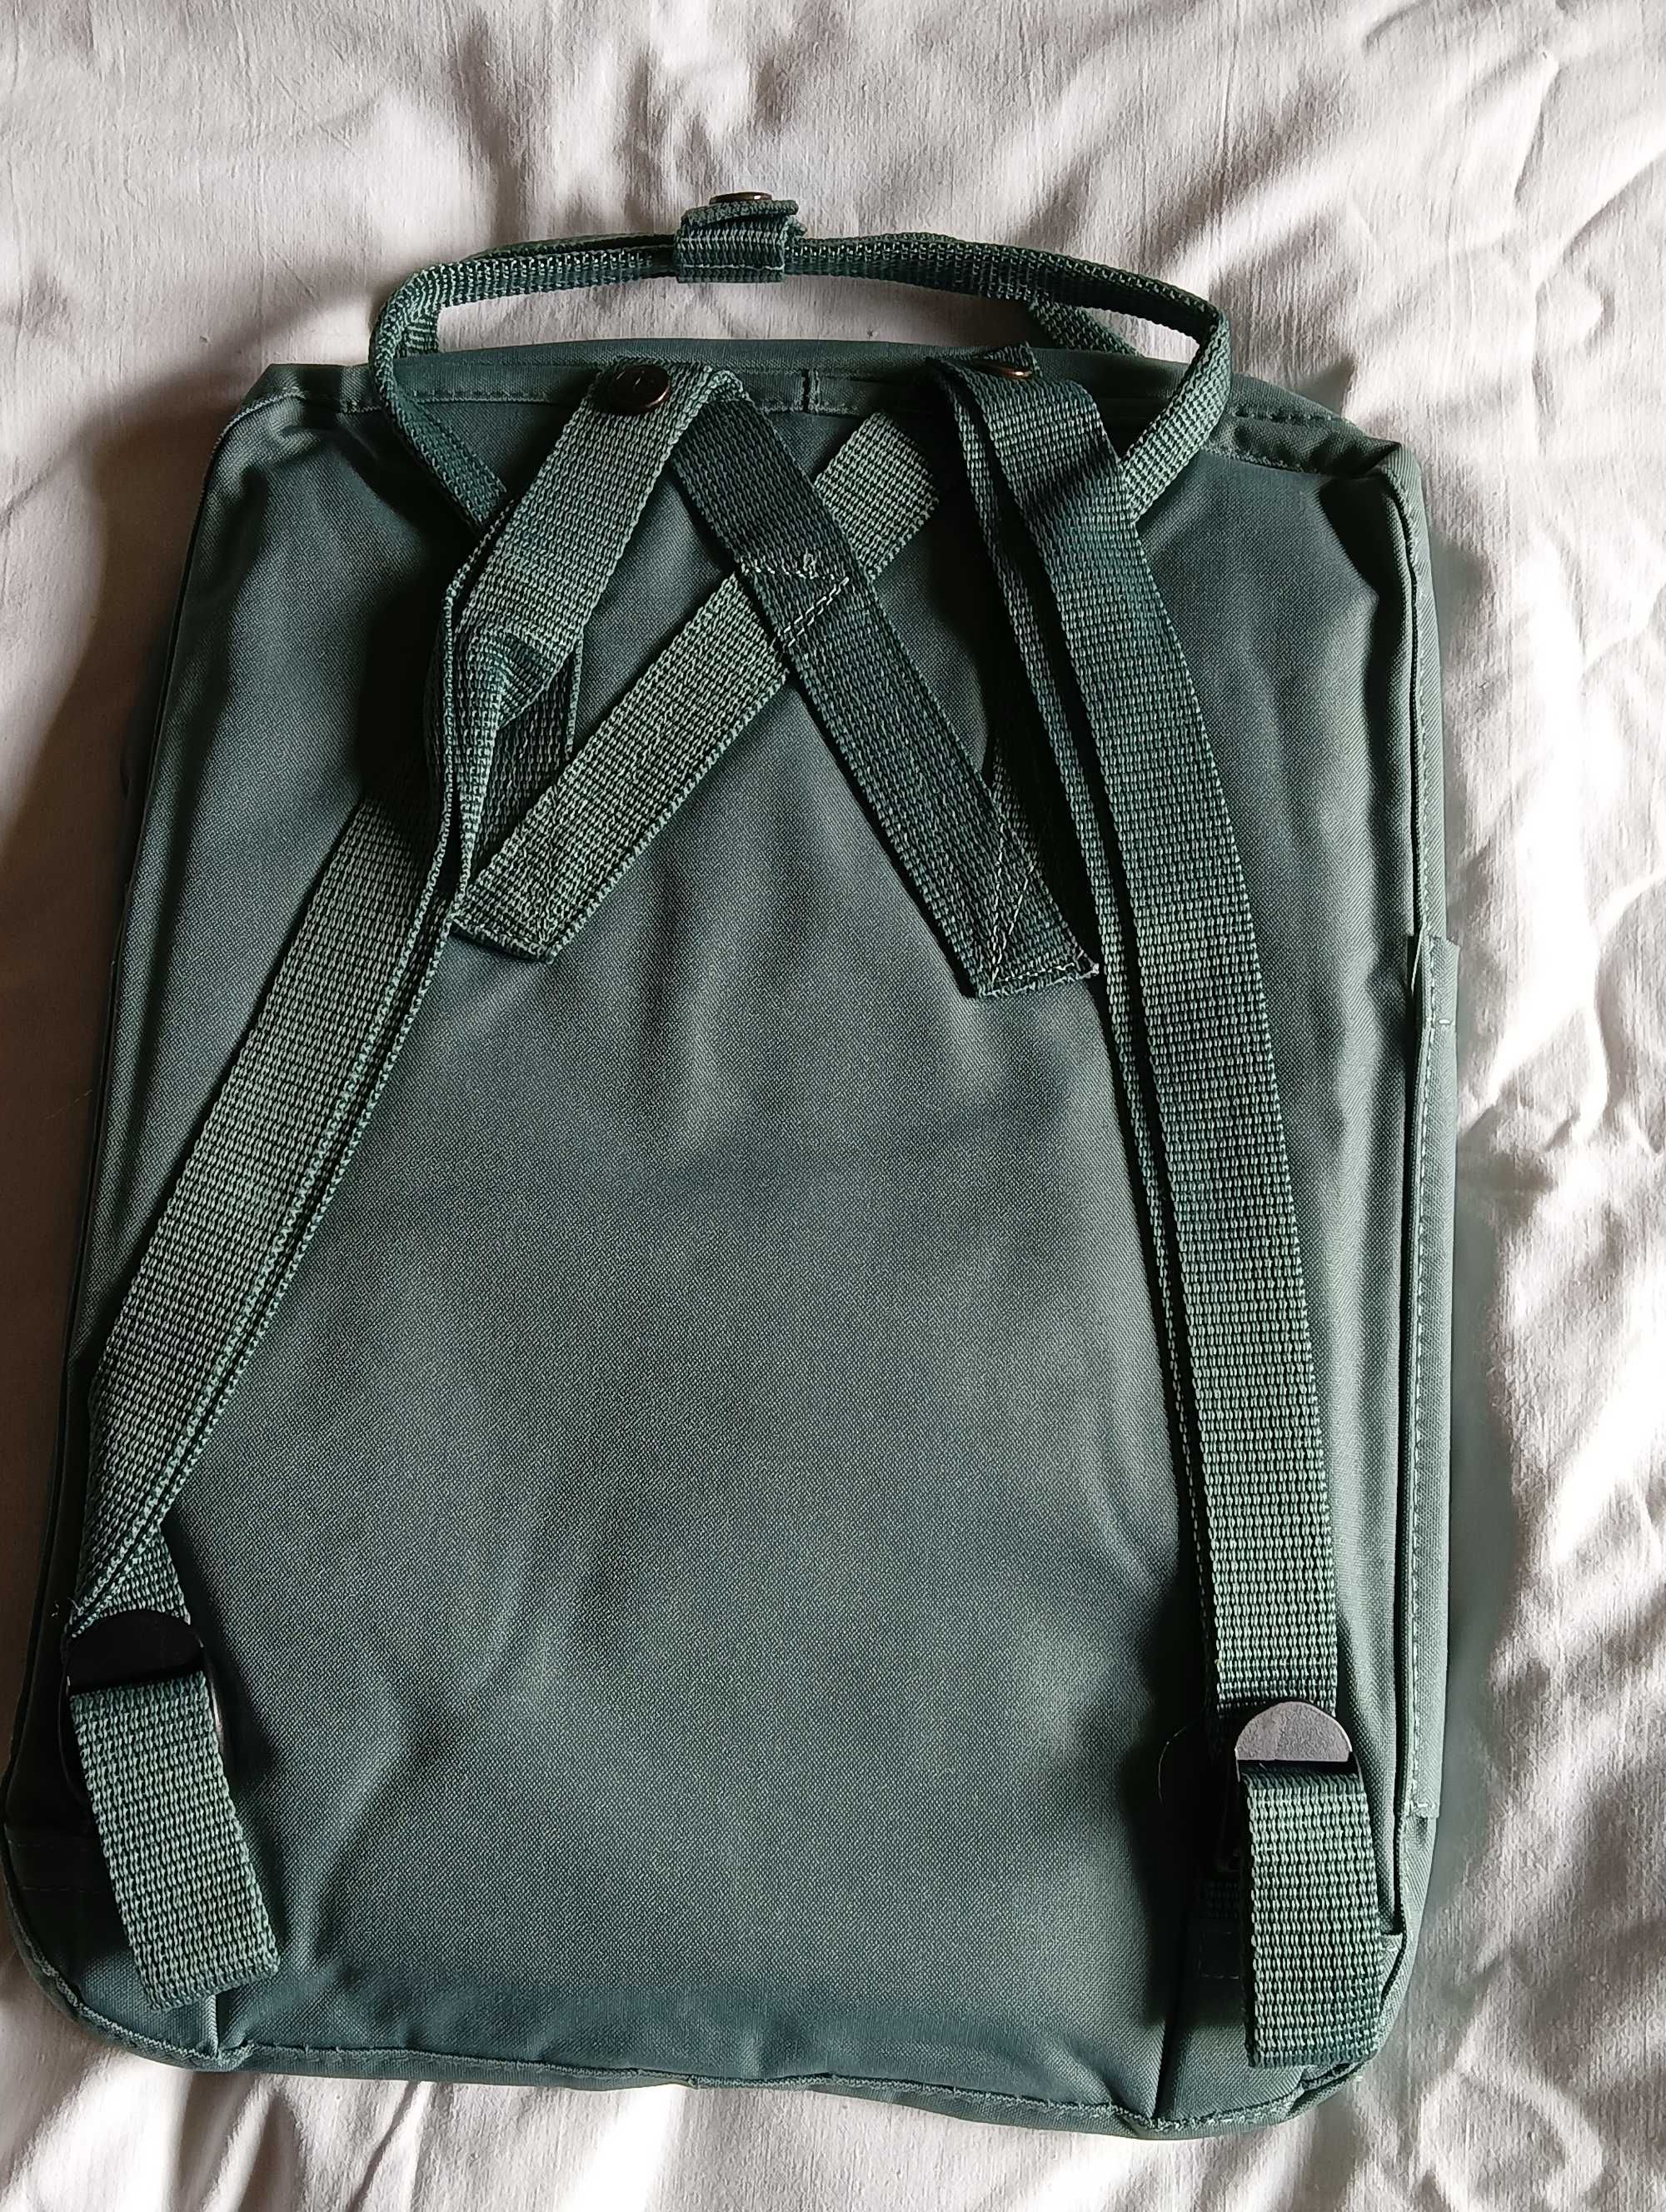 Plecak Zielony Fjallraven Kanken - 16 Litrów